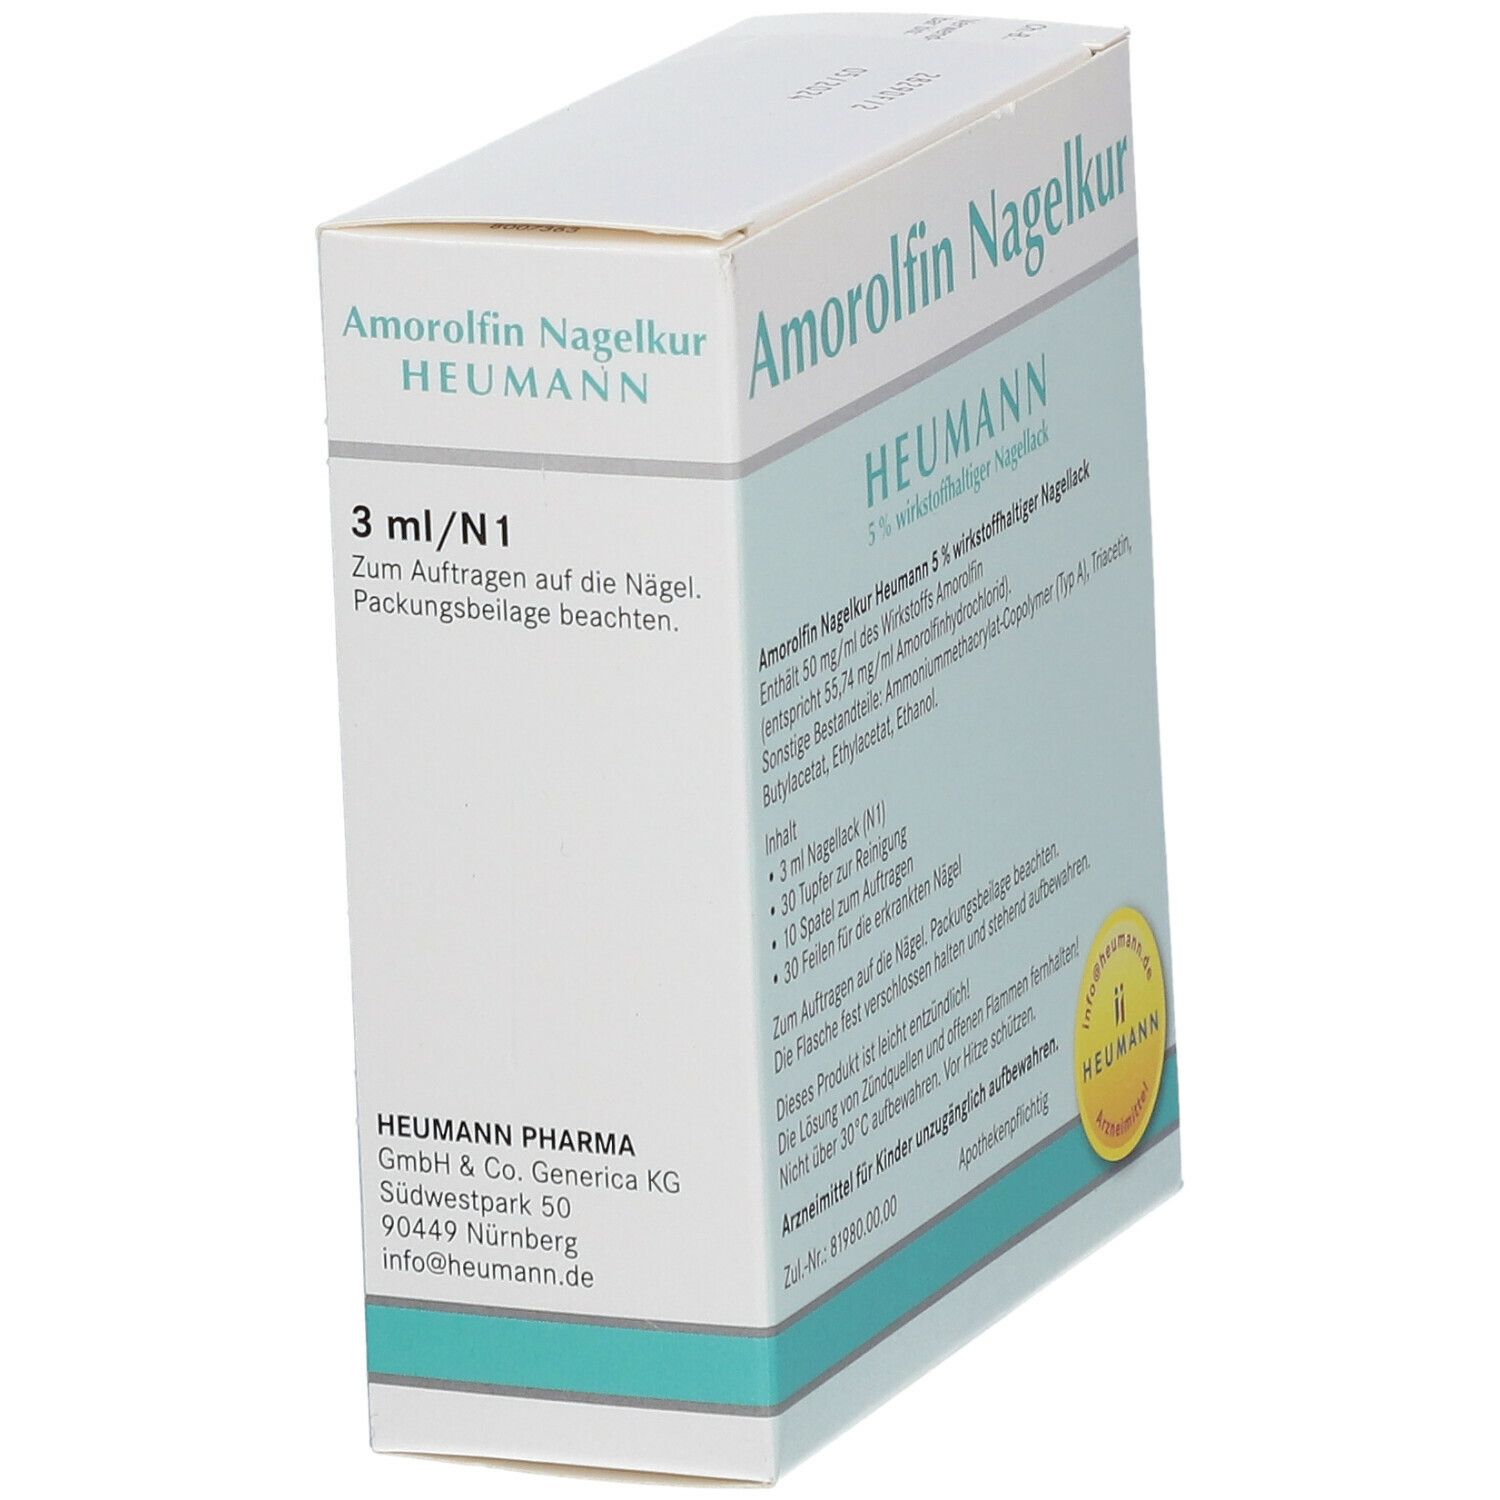 Amorolfin Nagelkur Heumann 5% wirkstoffhaltiger Nagellack